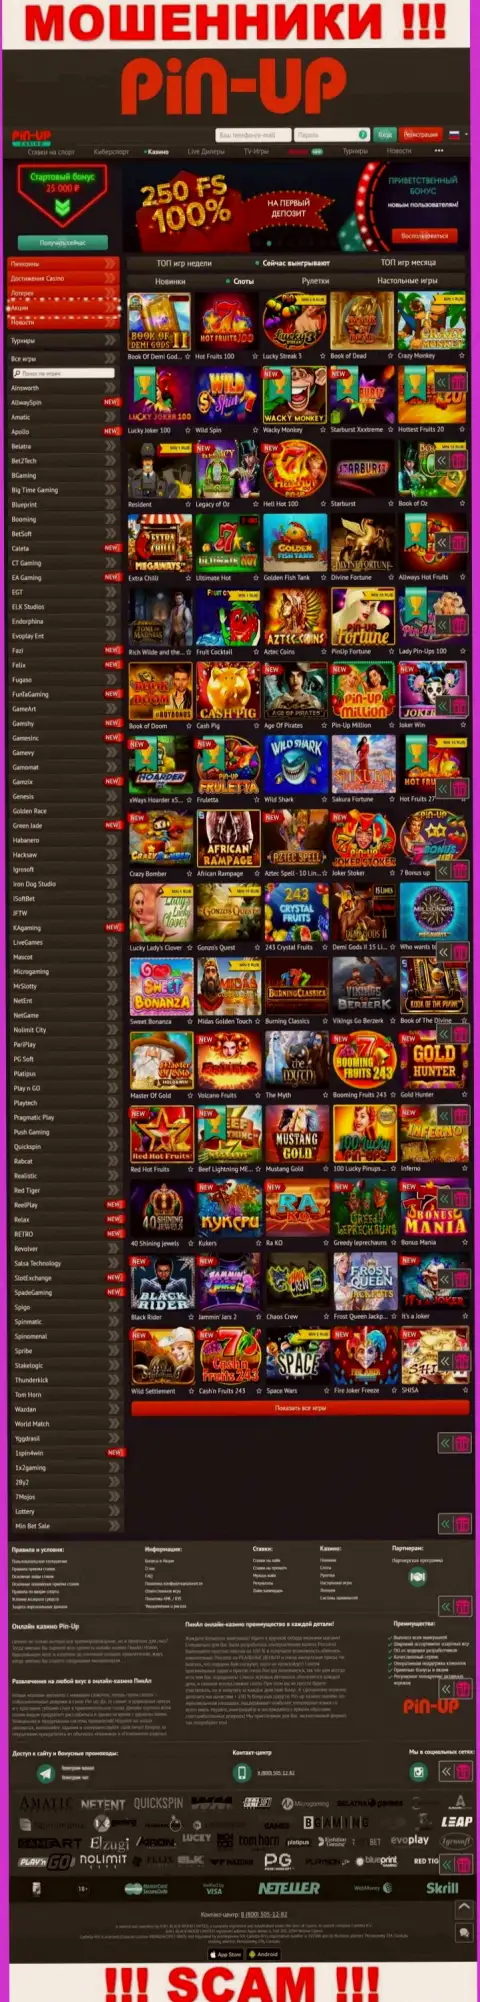 Pin-Up Casino - это официальный сайт мошенников Pin Up Casino